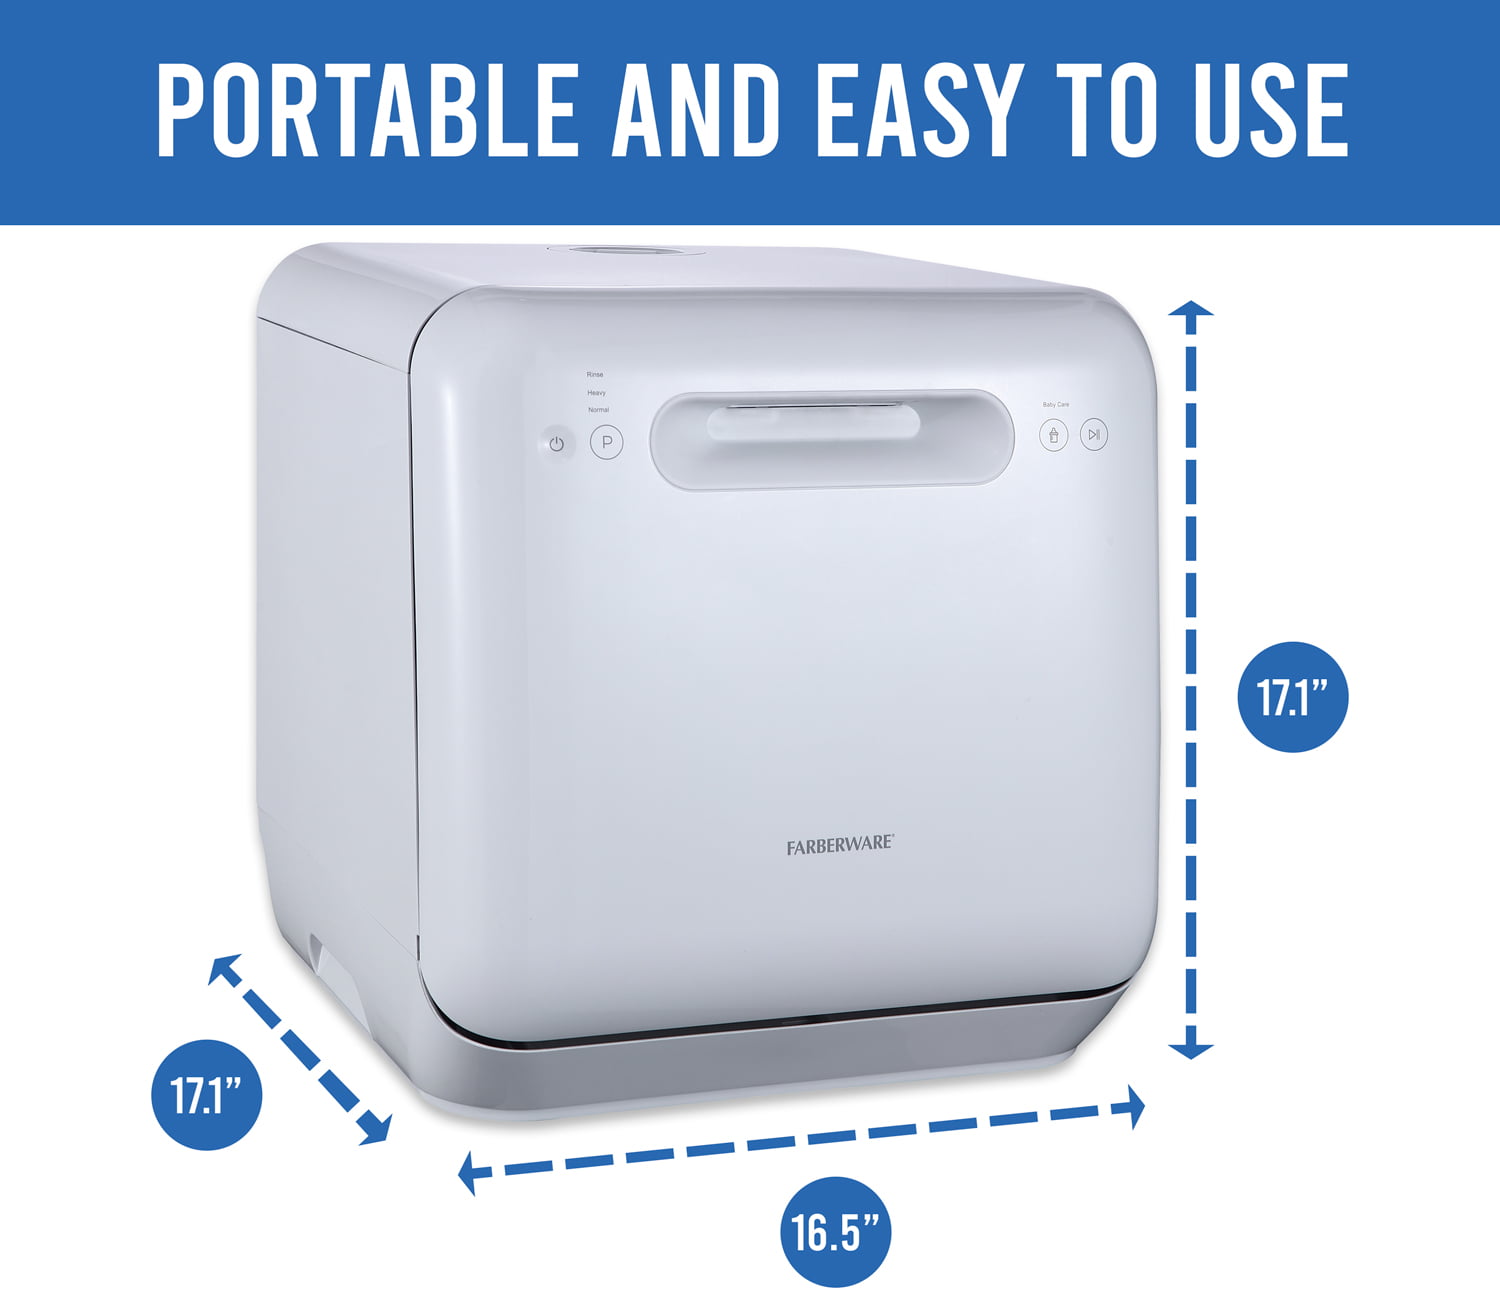 Farberware Professional Complete Portable Countertop Dishwasher